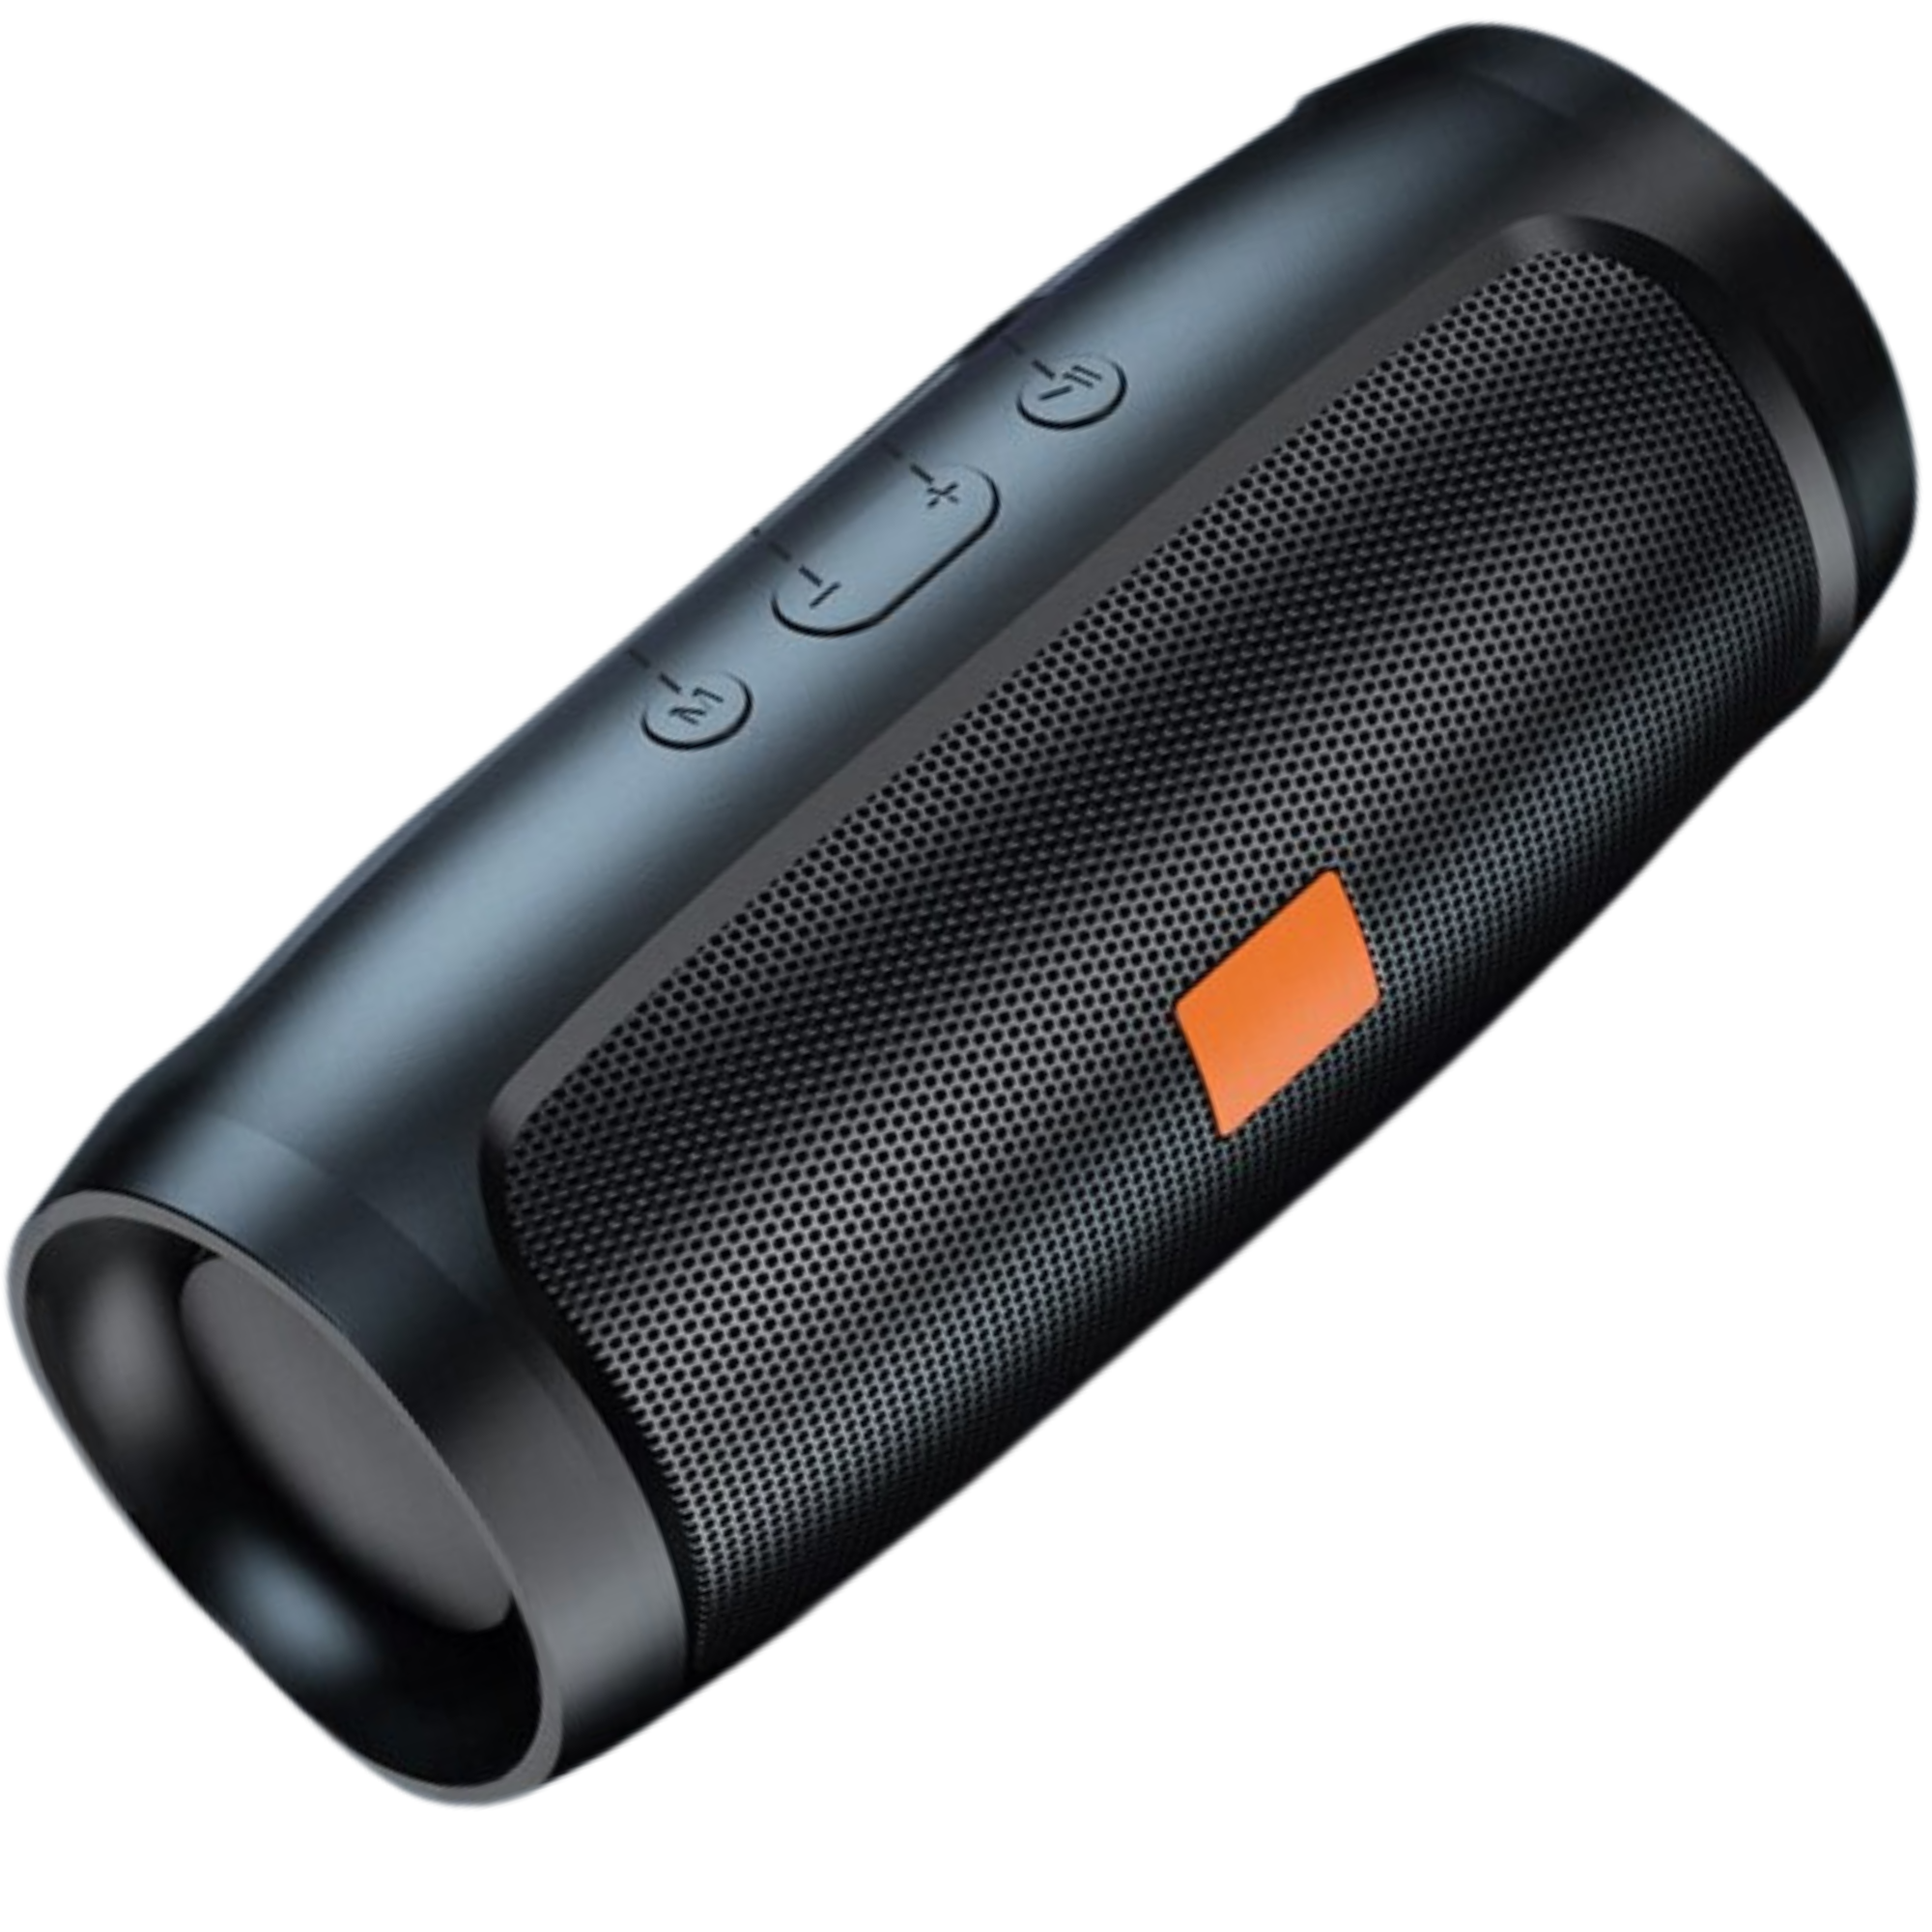 Premium Dual-Lautsprecher Stereo für Outdoor: Tragbarer Subwoofer mit TF/USB-Wiedergabe, FM, Voice Broadcasting | Kompatibel